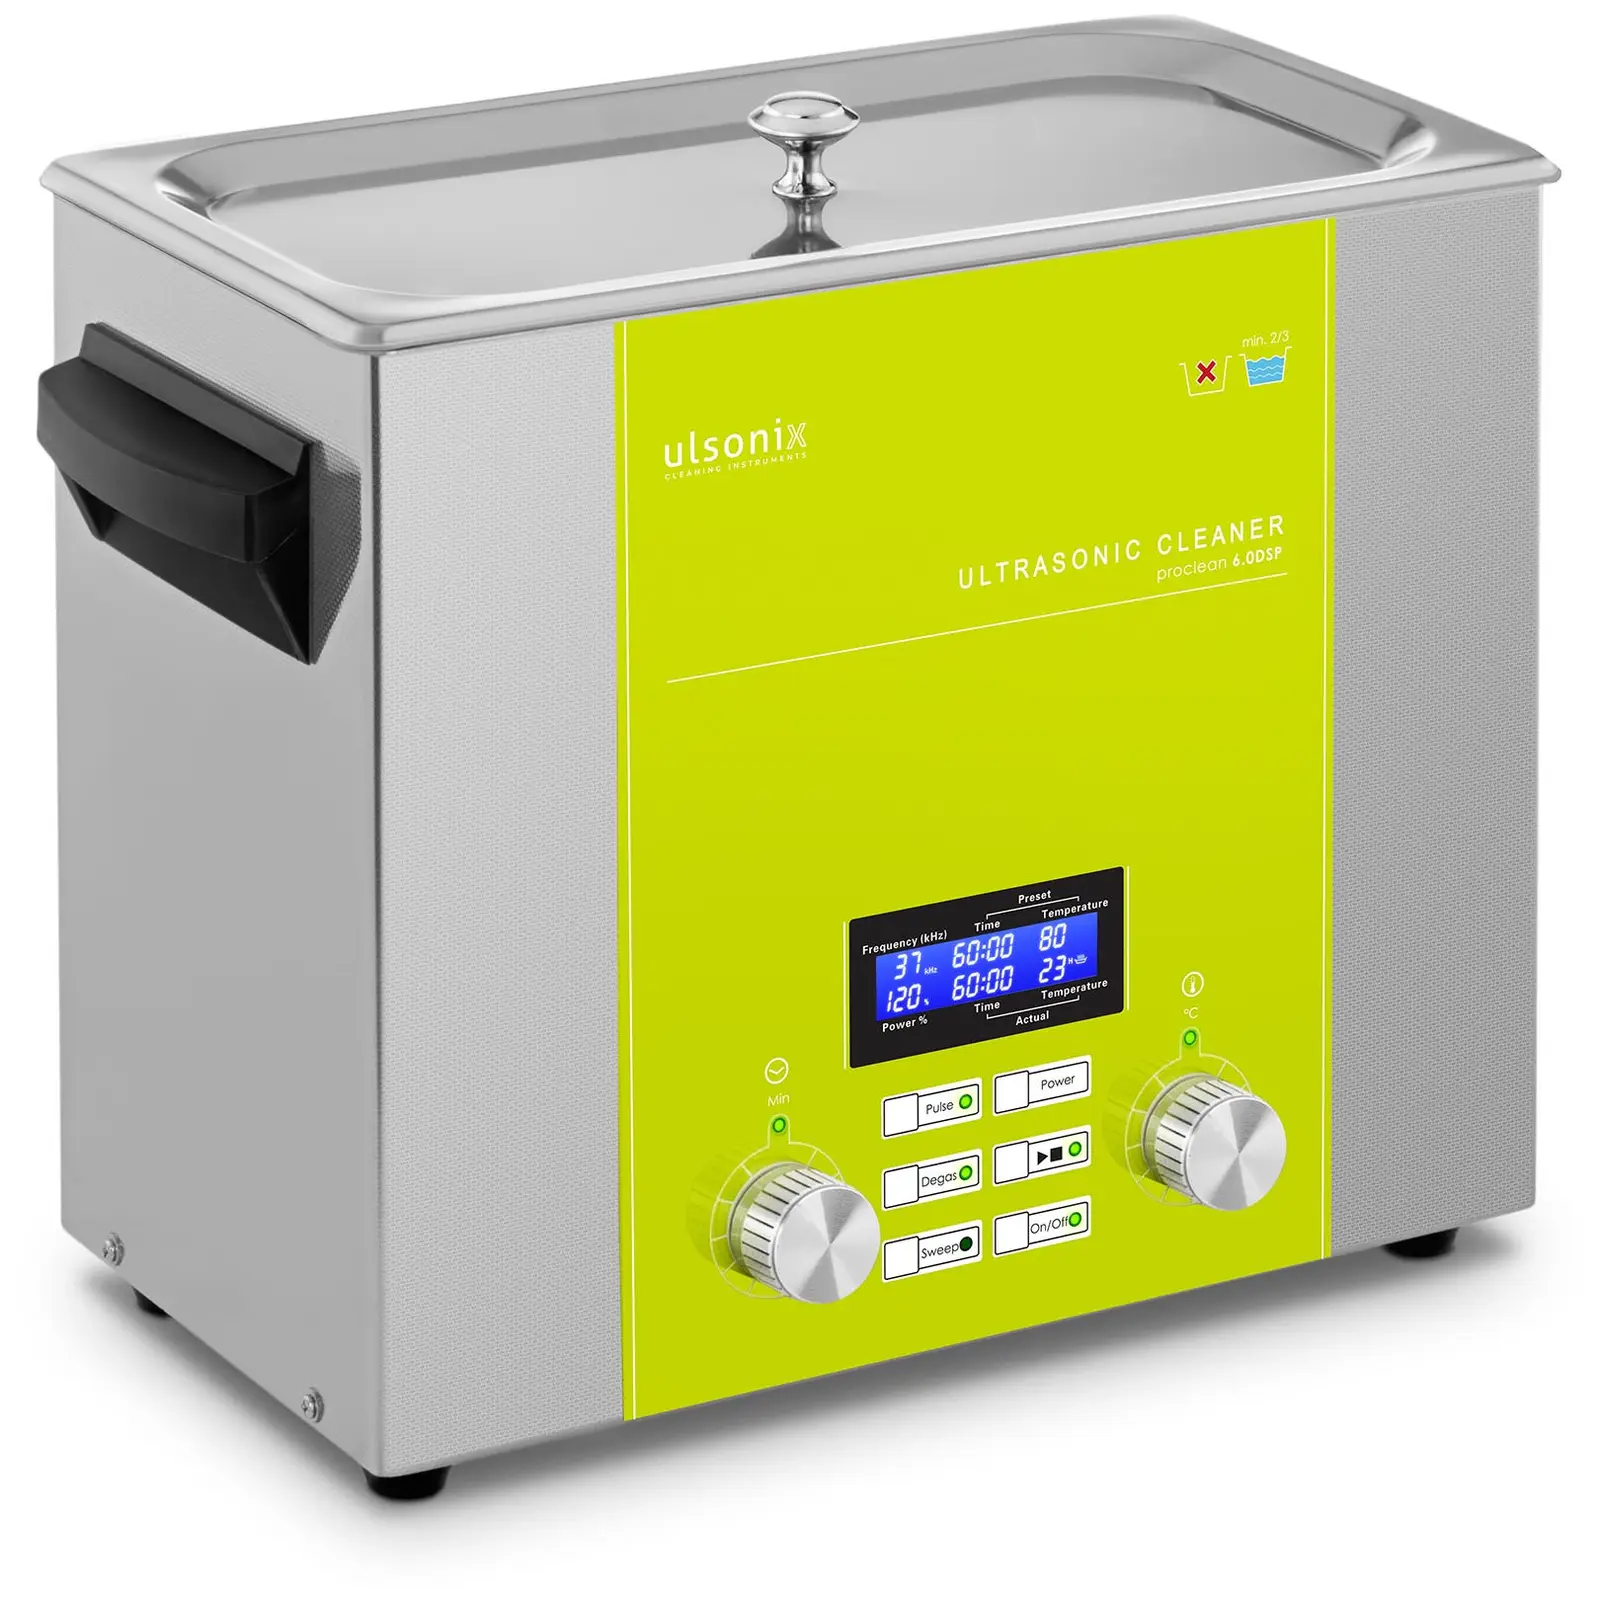 Ultrahangos tisztító - 6 liter - Degas - Sweep - Puls